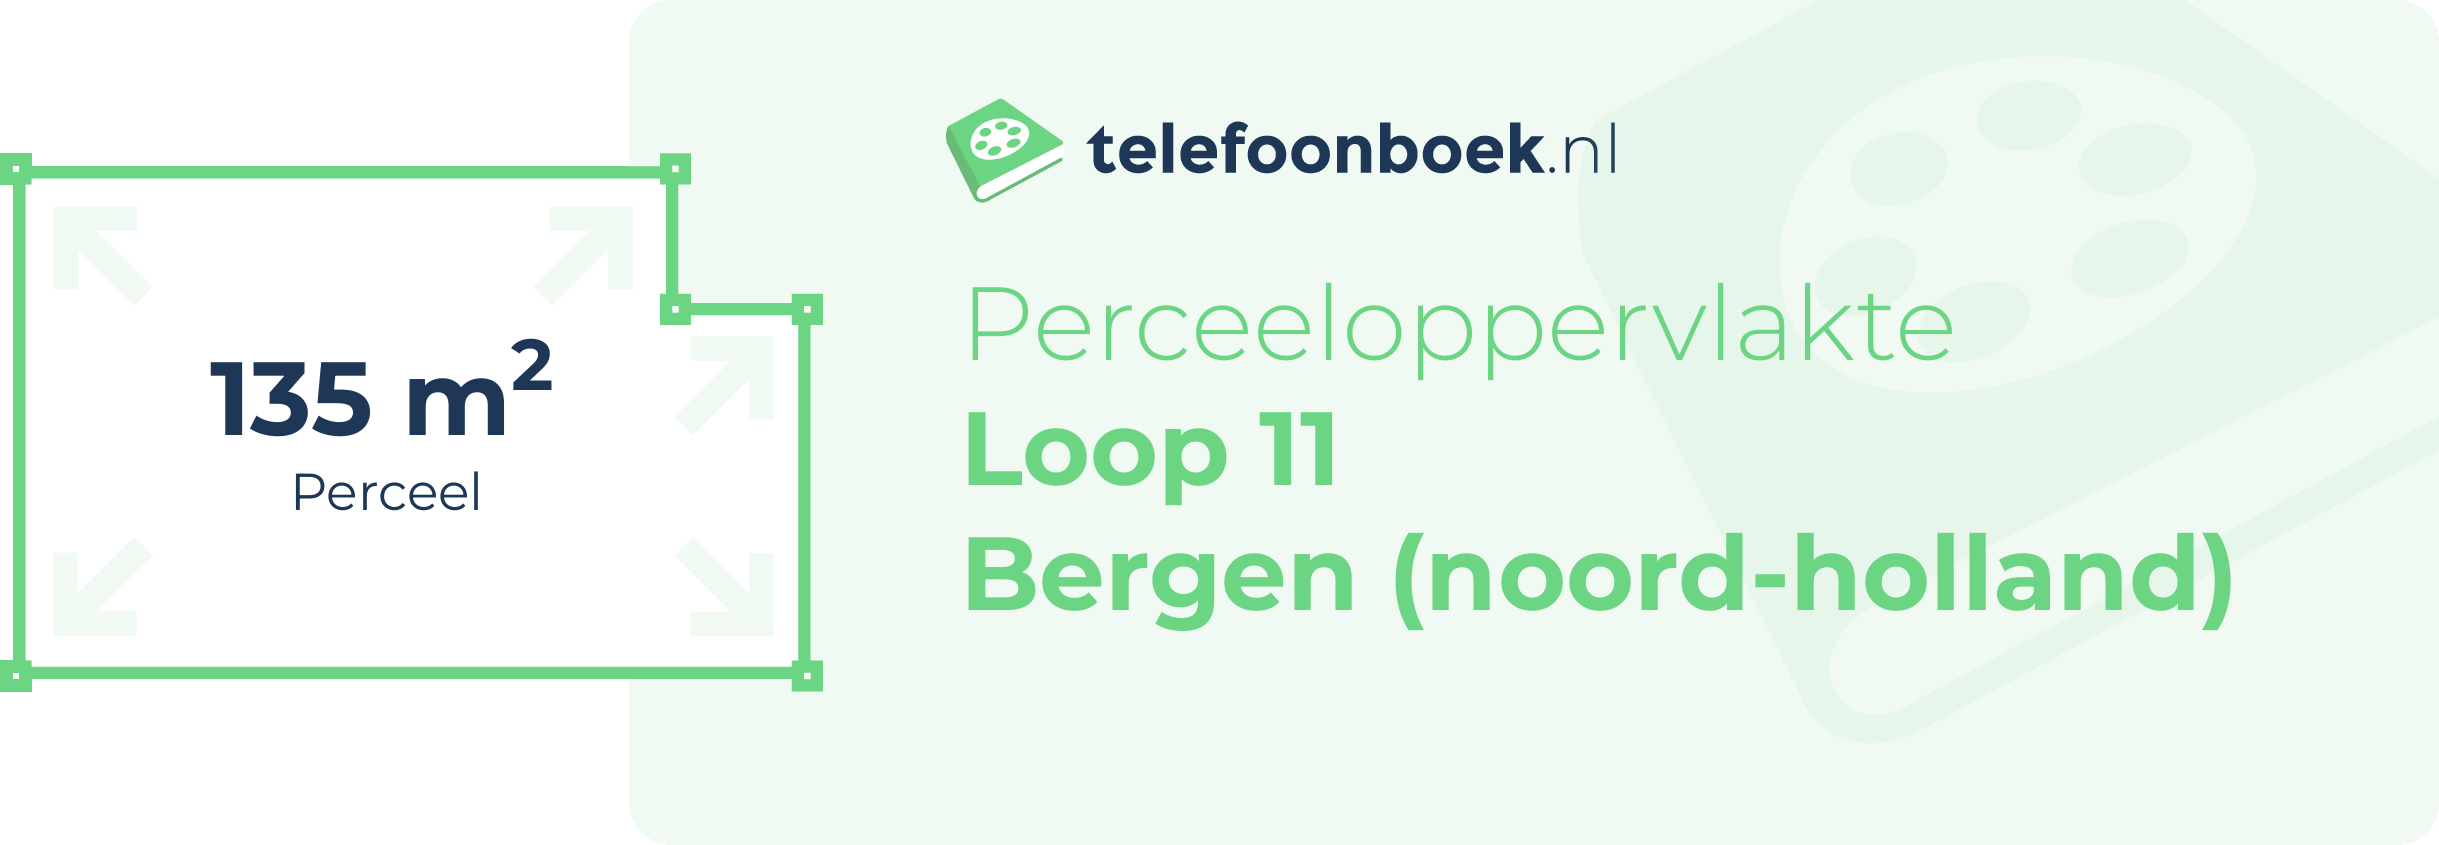 Perceeloppervlakte Loop 11 Bergen (Noord-Holland)